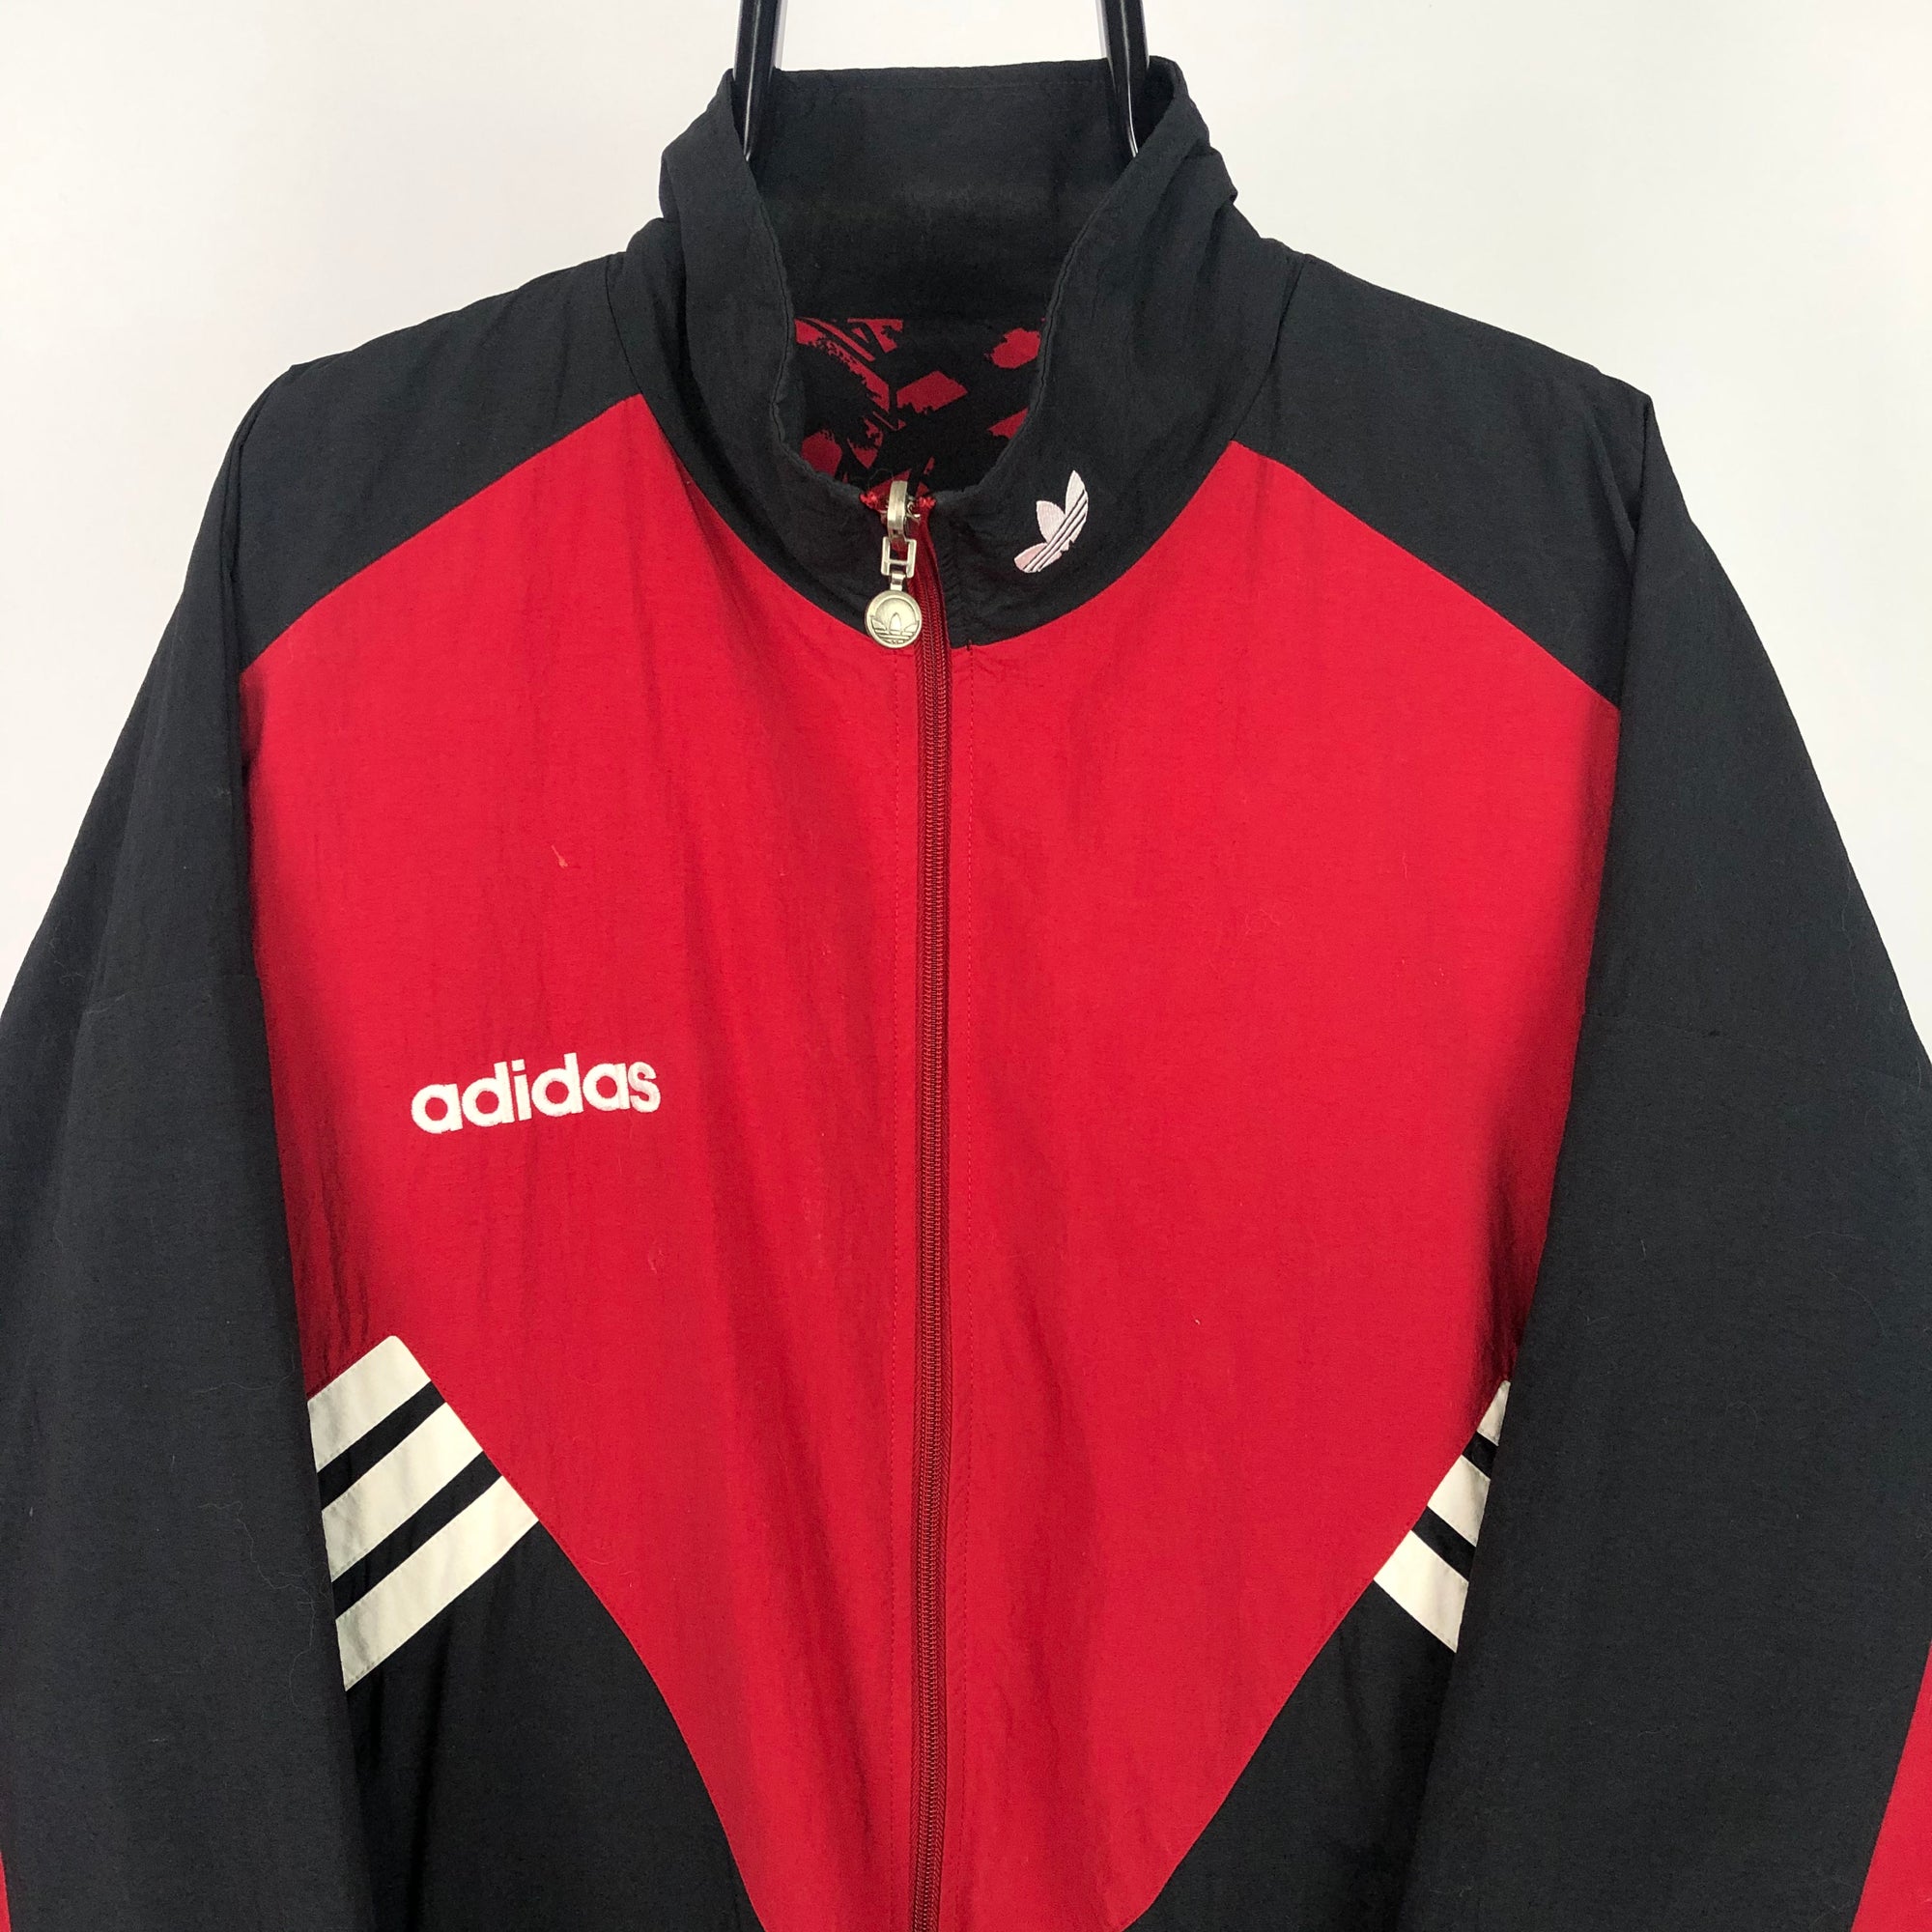 Vintage 90s Adidas Reversible Track Jacket - Men's XXL/Women's XXXL